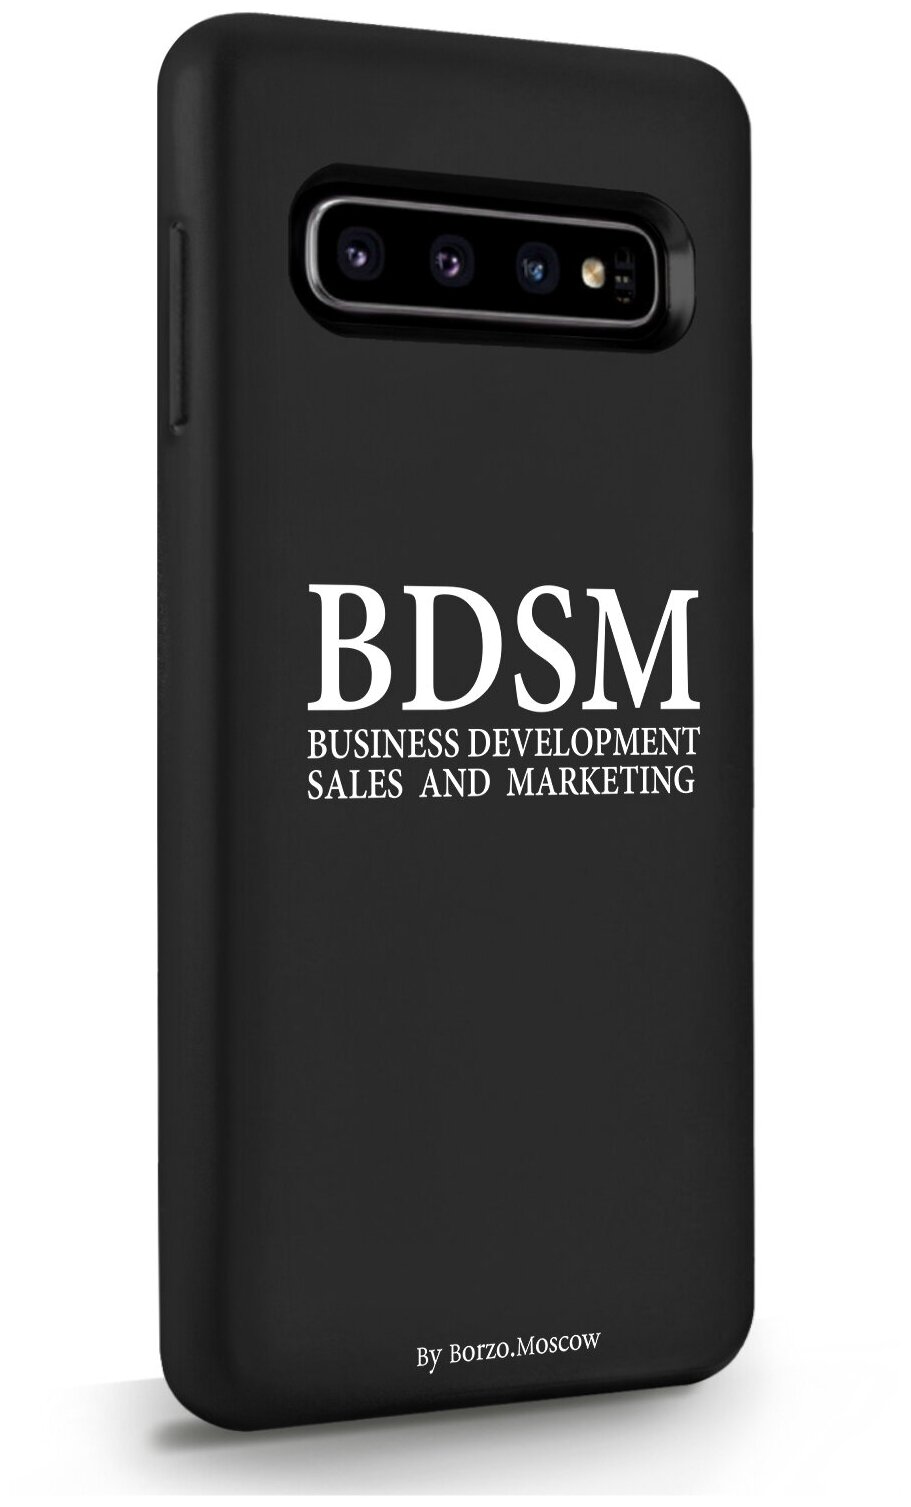 Черный силиконовый чехол Borzo.Moscow для Samsung Galaxy S10 BDSM (business development sales and marketing) для Самсунг Галакси С10